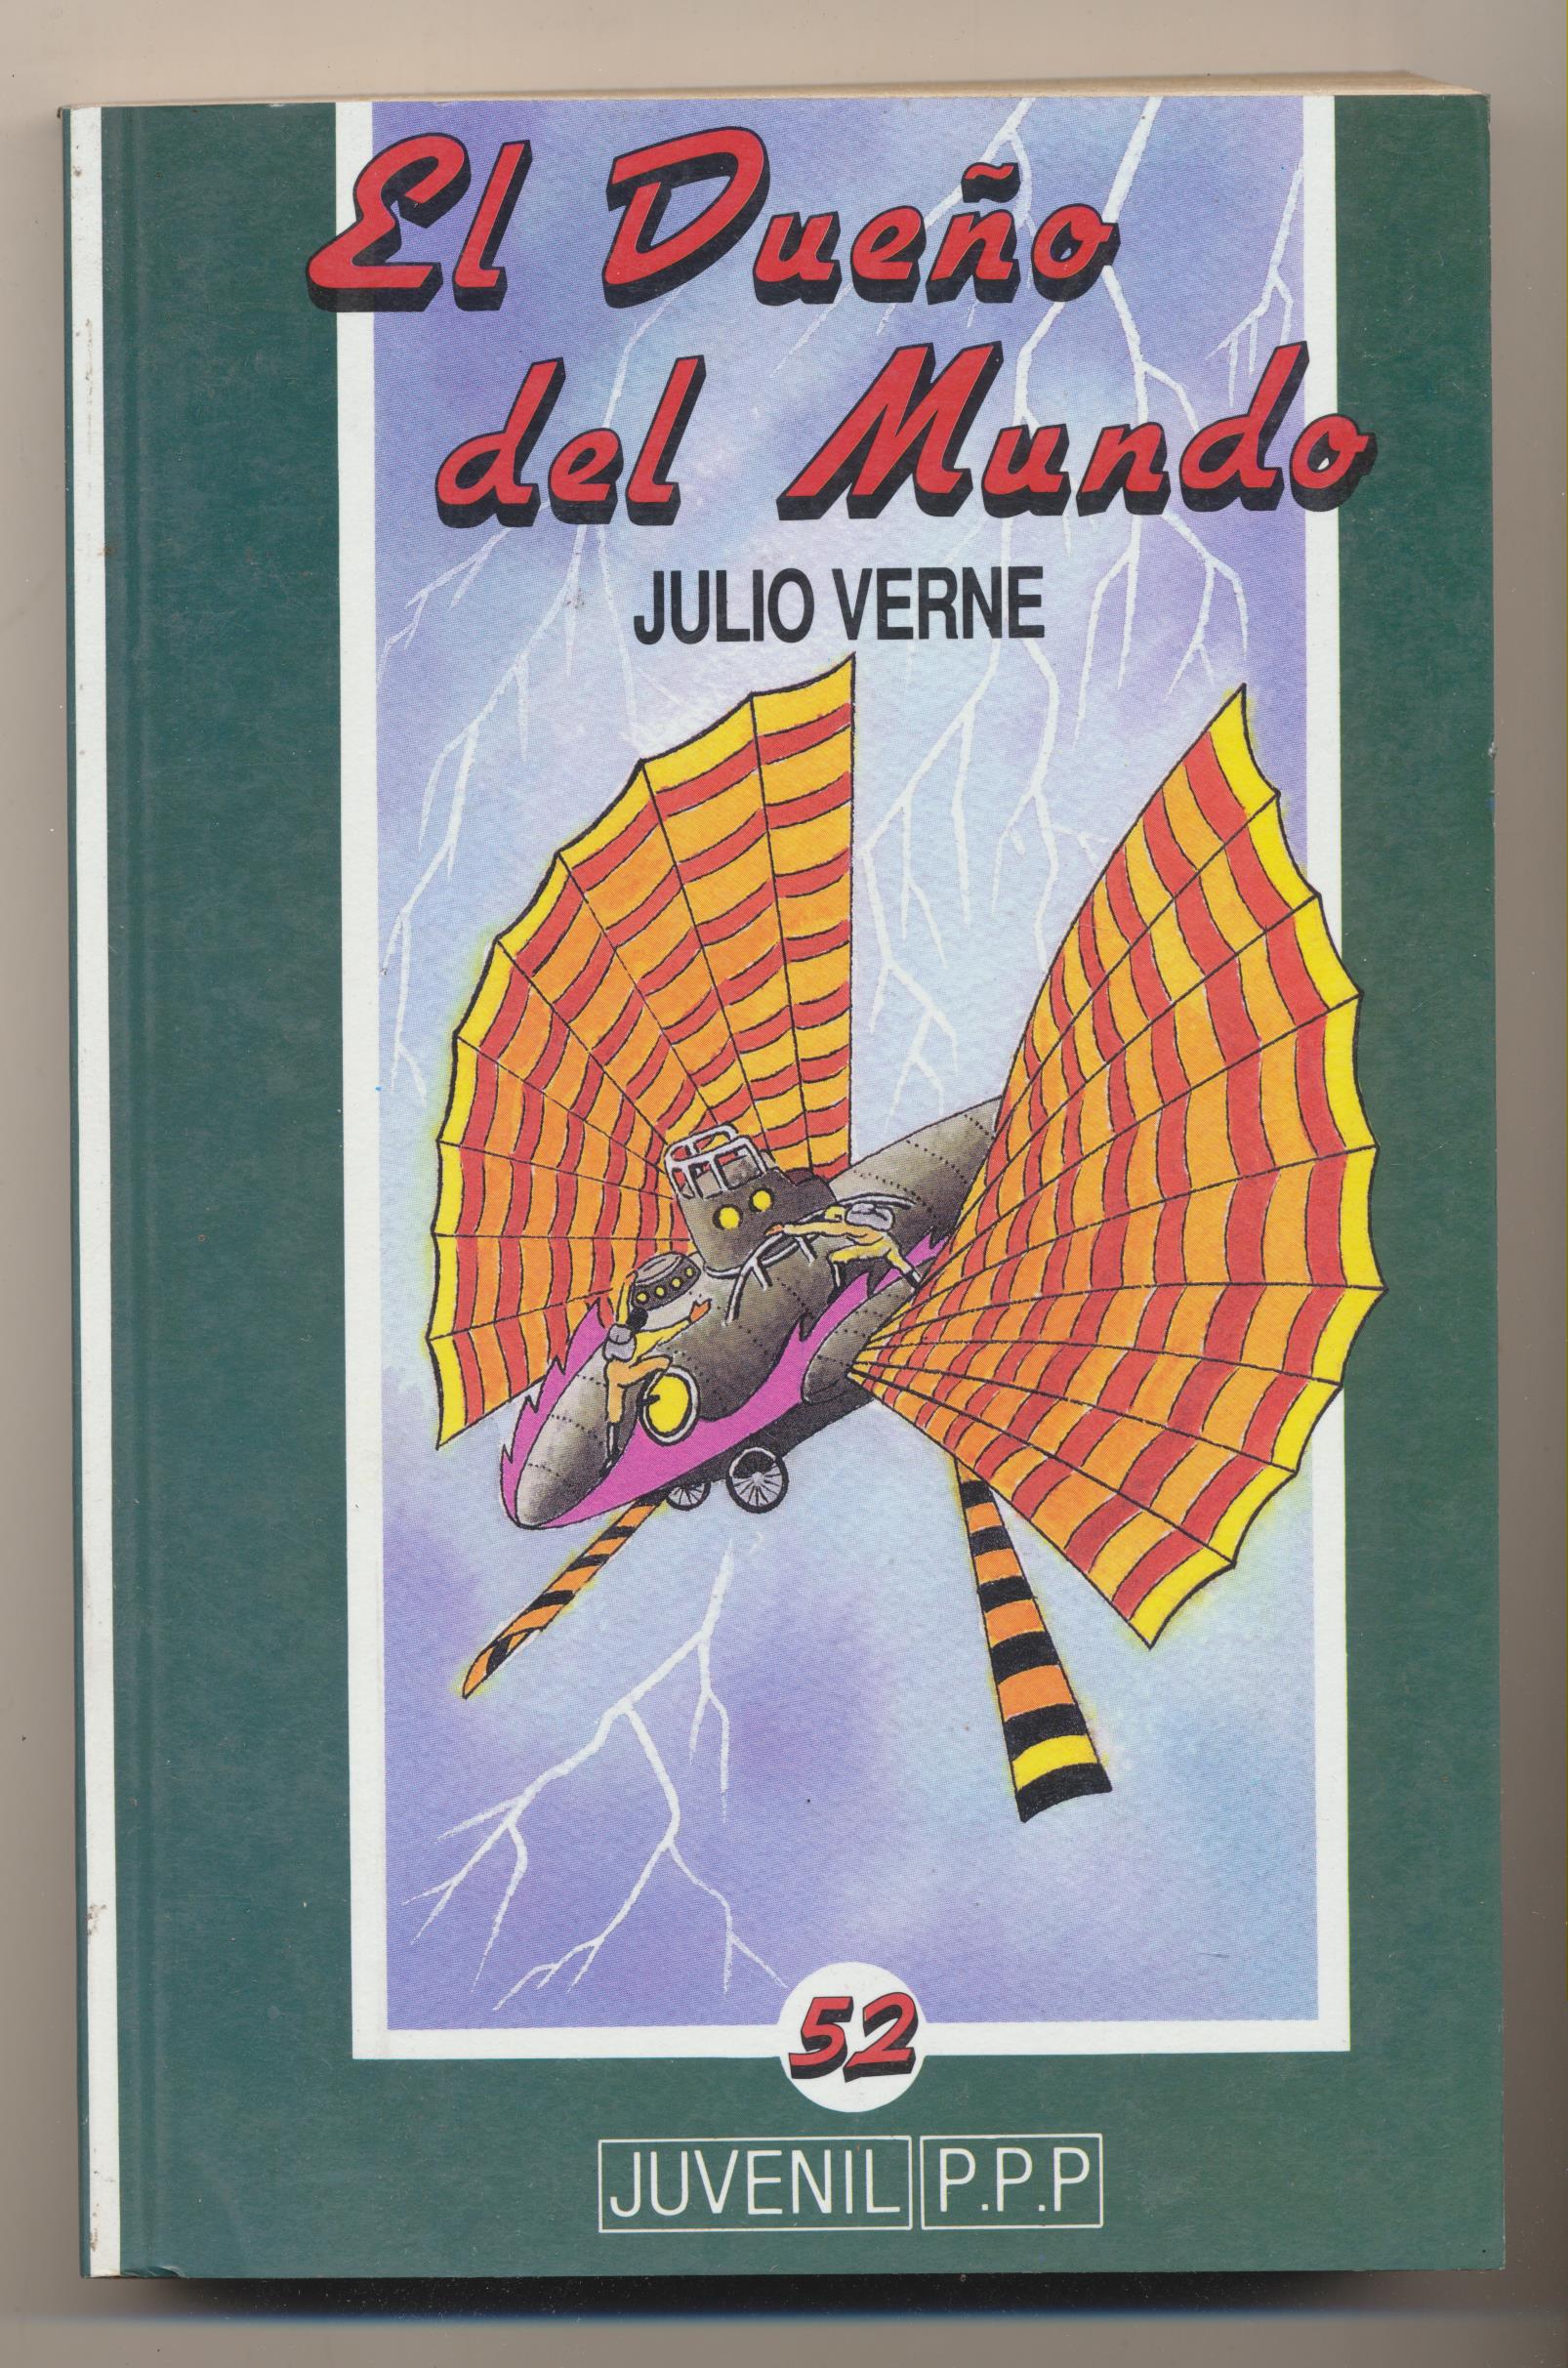 Julio Verne. El dueño del mundo. P.P.P. 1990